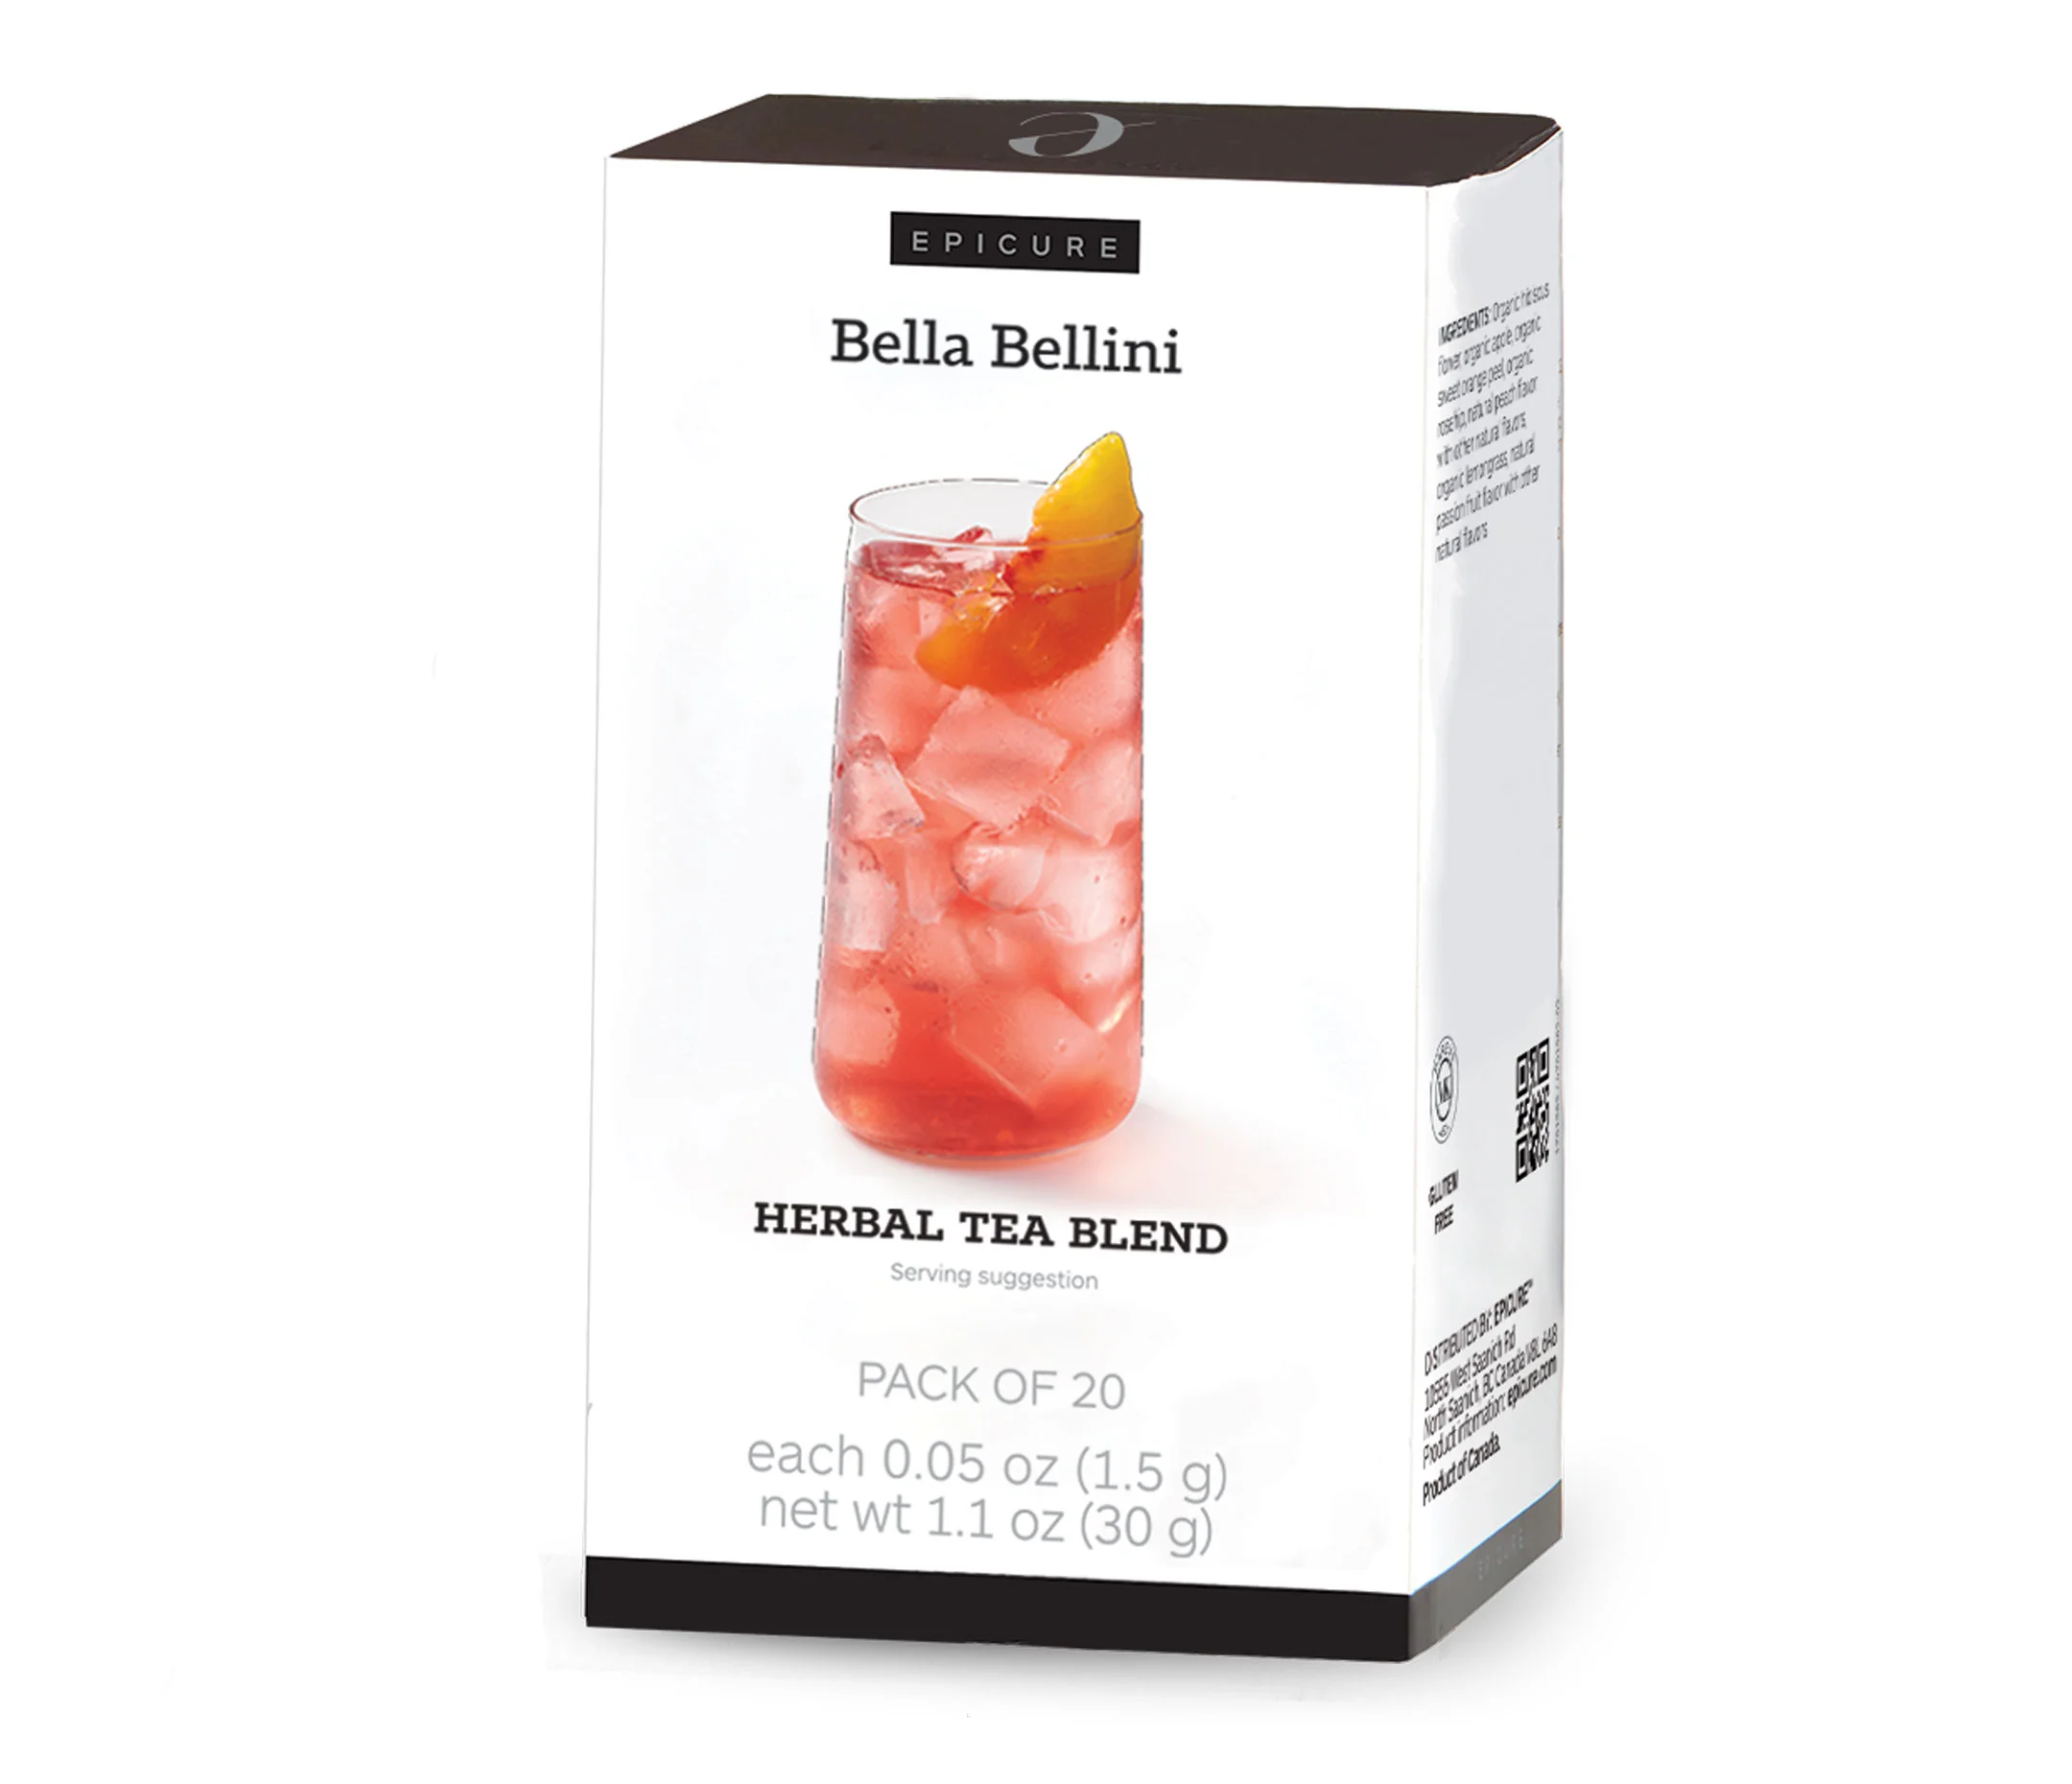 Bella Bellini Herbal Tea Blend